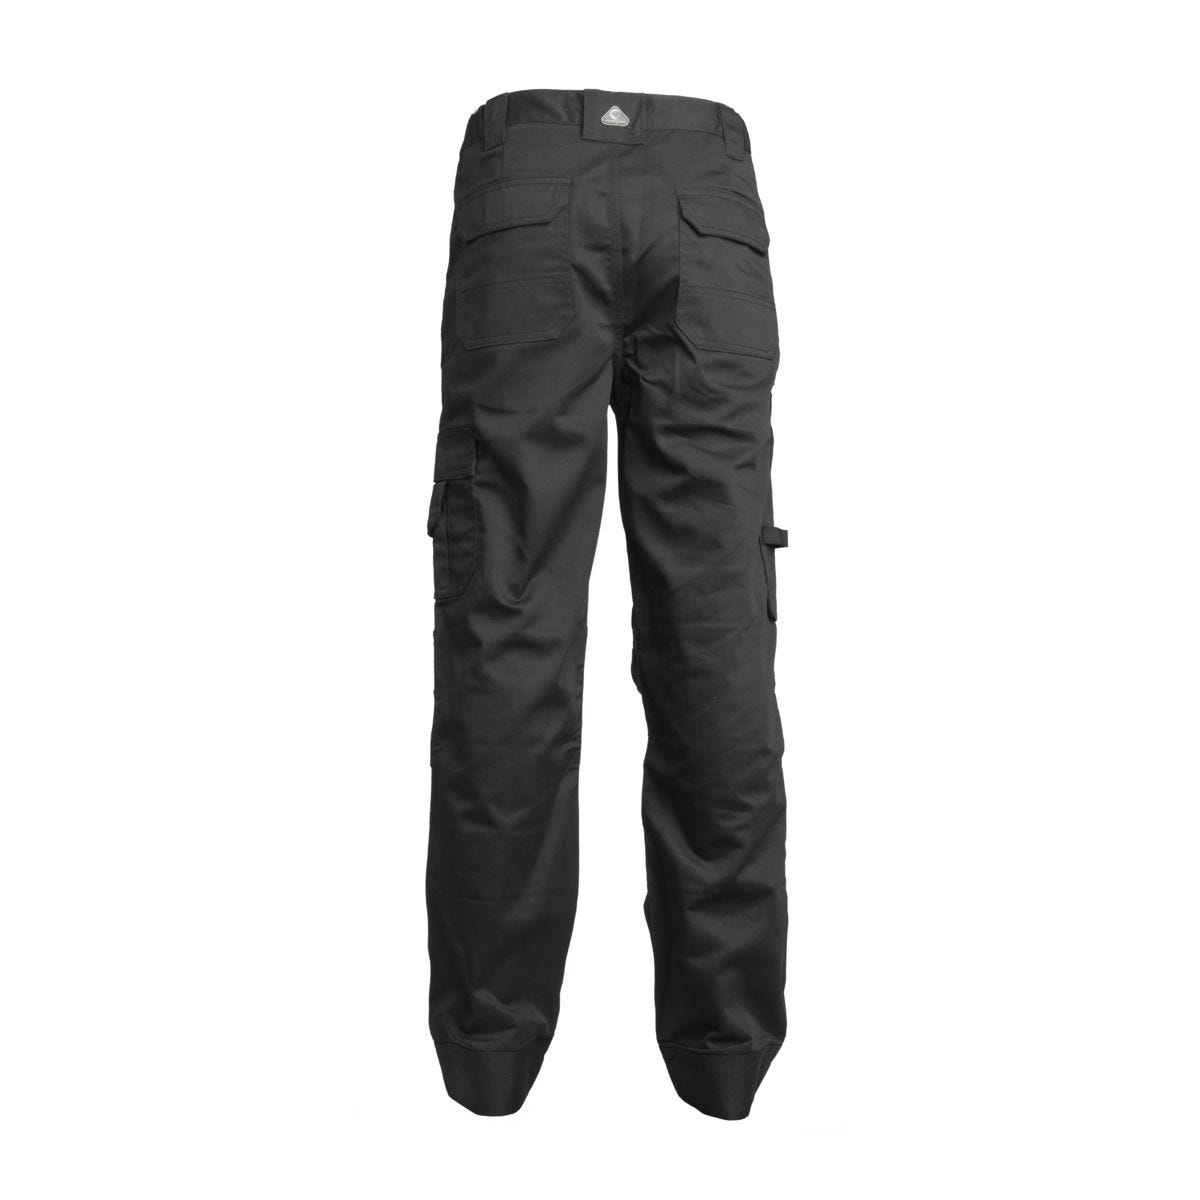 Pantalon CLASS noir - COVERGUARD - Taille 2XL 1